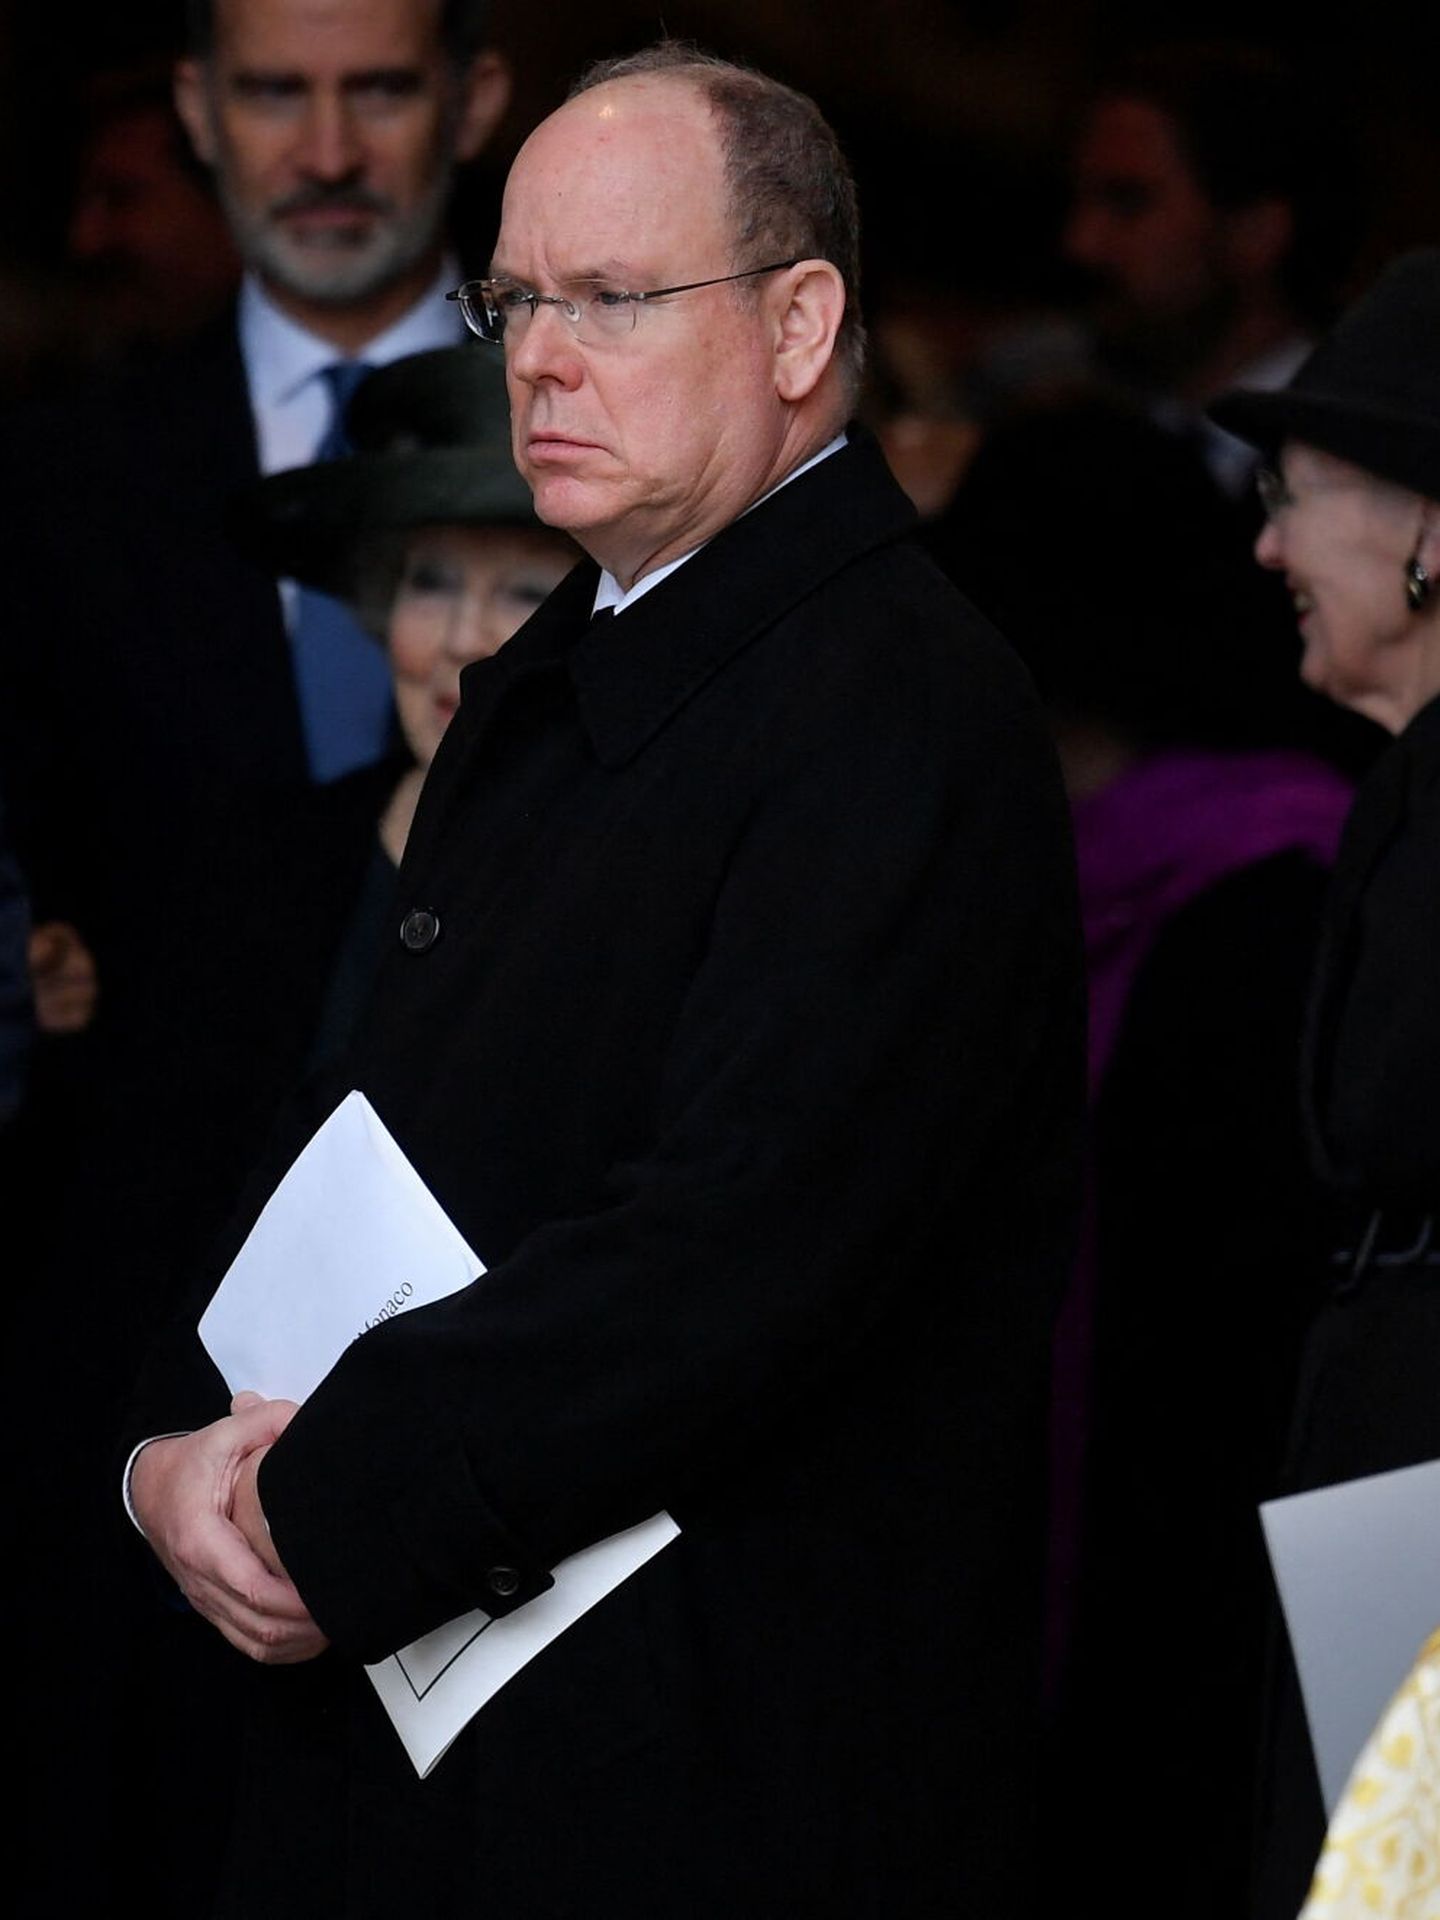 Alberto, en el servicio religioso del duque de Edimburgo. (Reuters/Toby Melville)